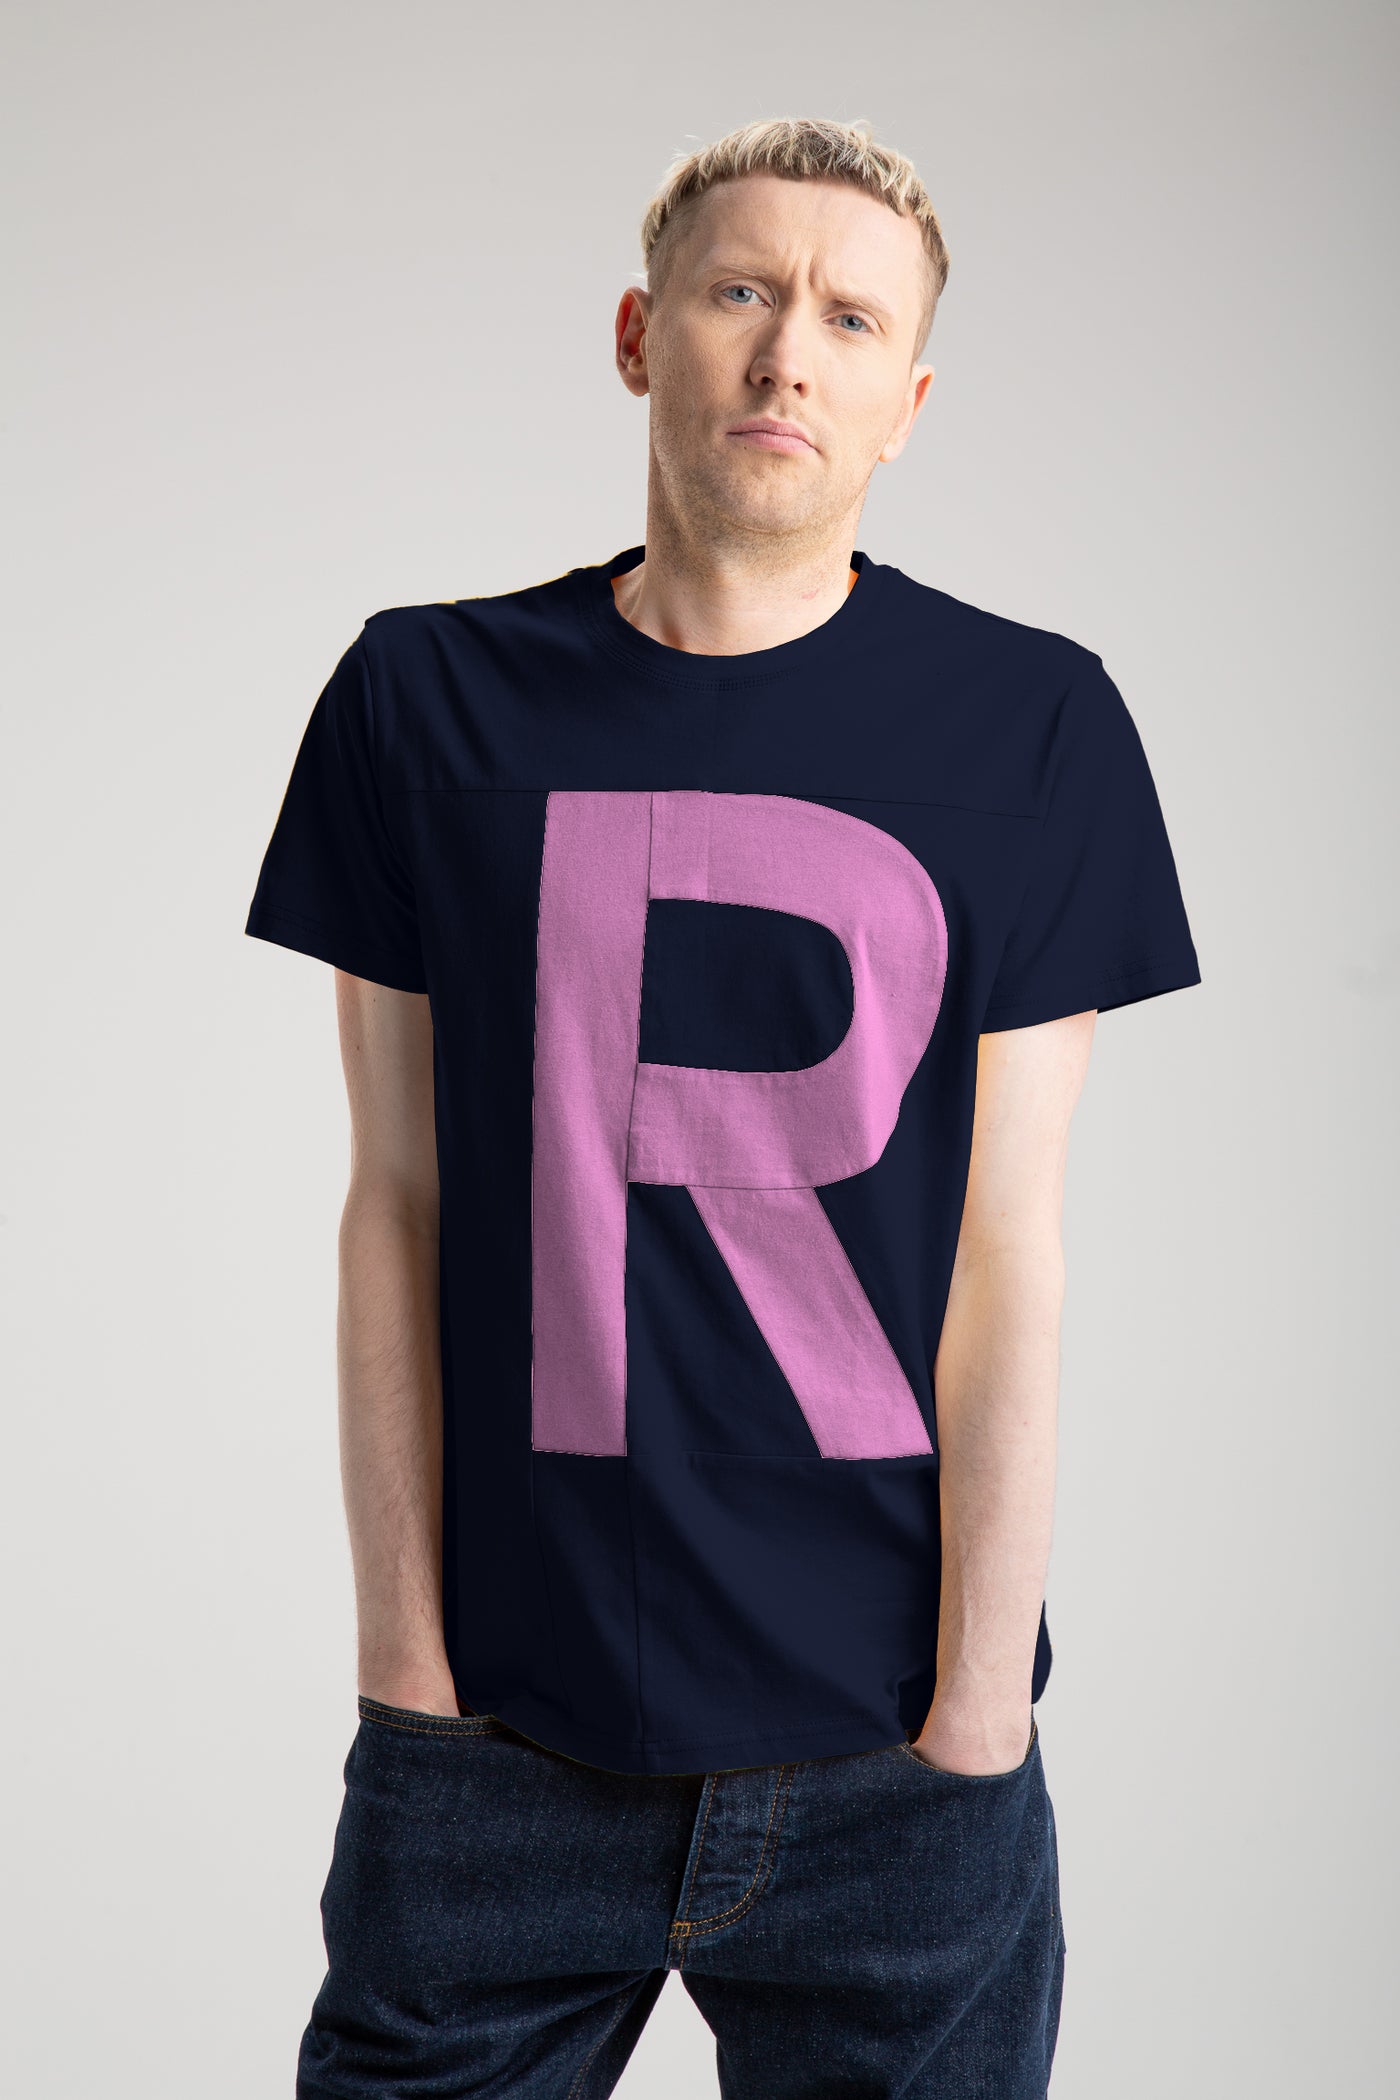 Up-Shirt für Herren - R Motiv | Blau, Rosa